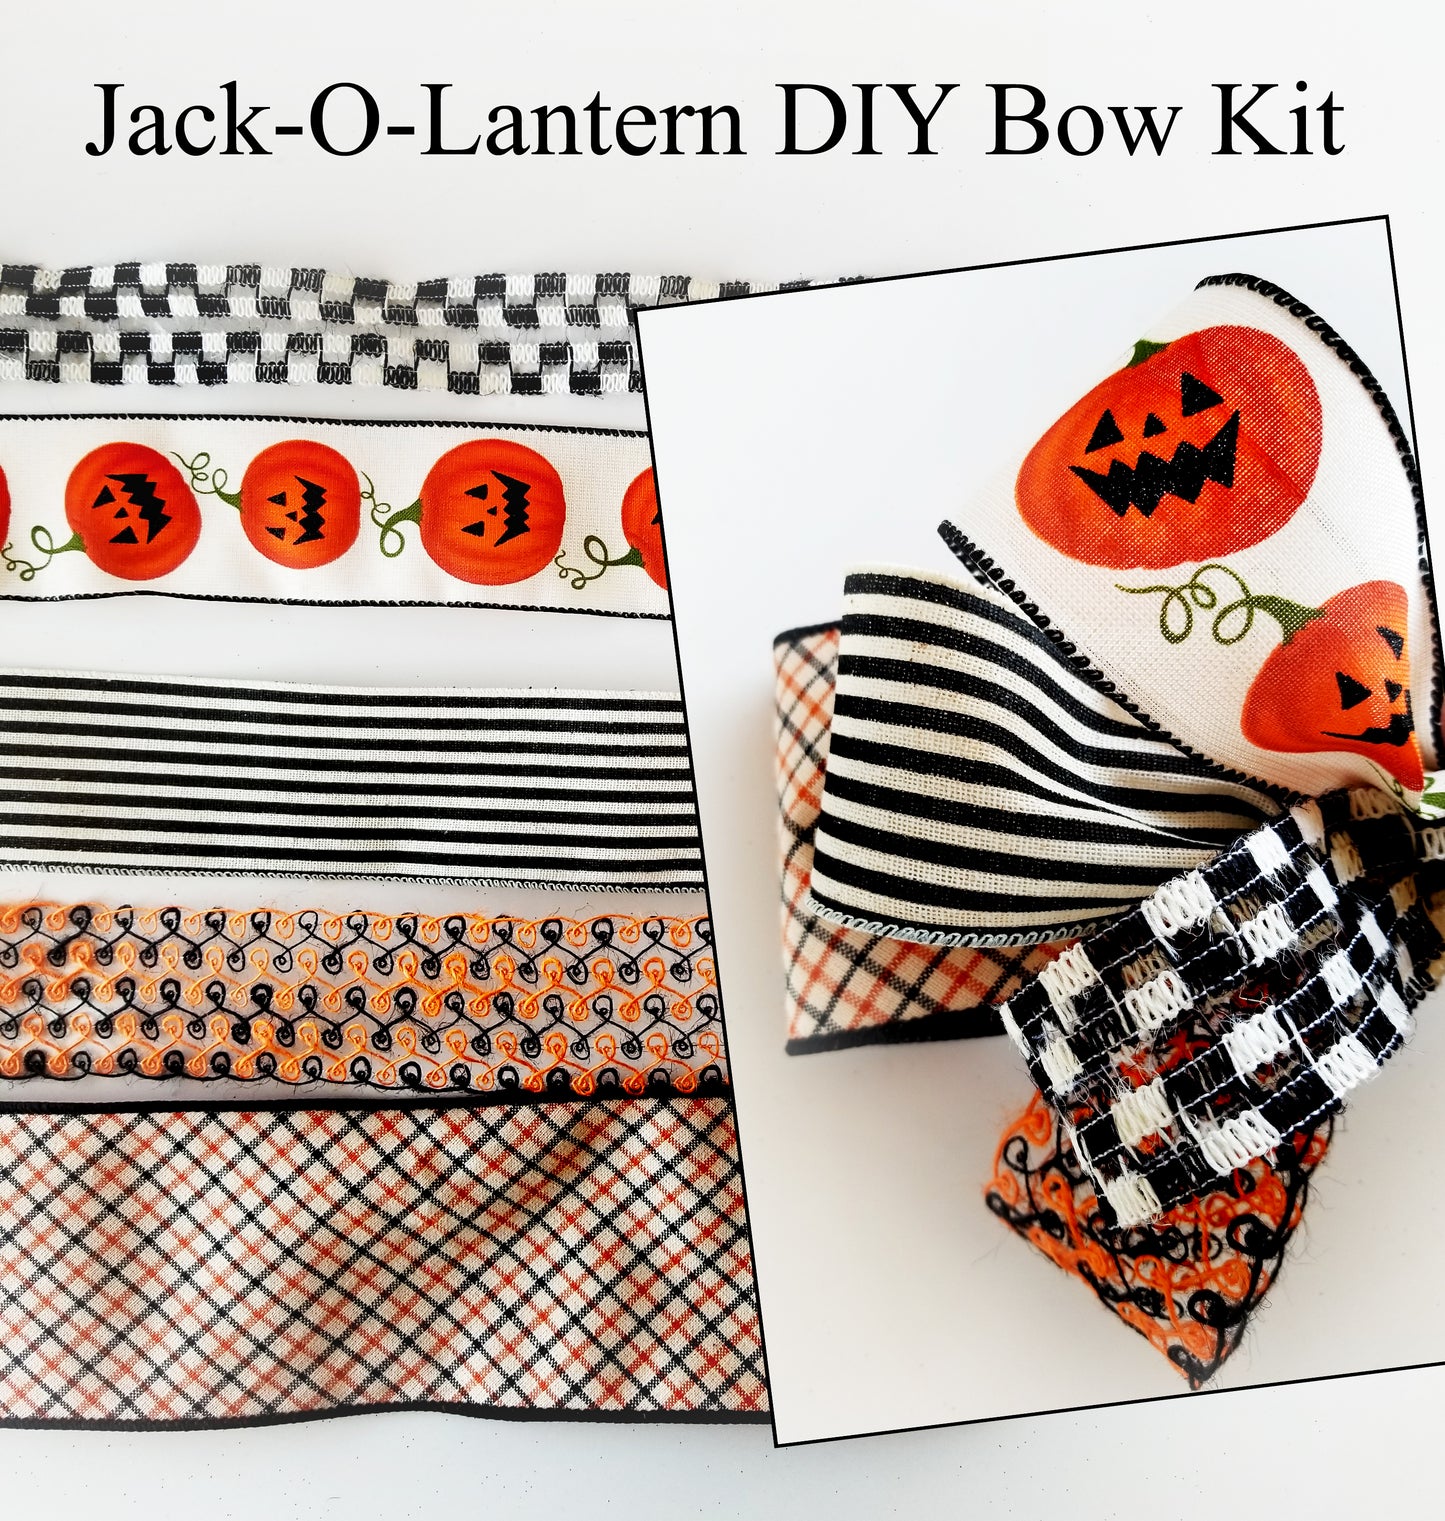 Jack-O-Lantern DIY Bow Kit - Designer DIY